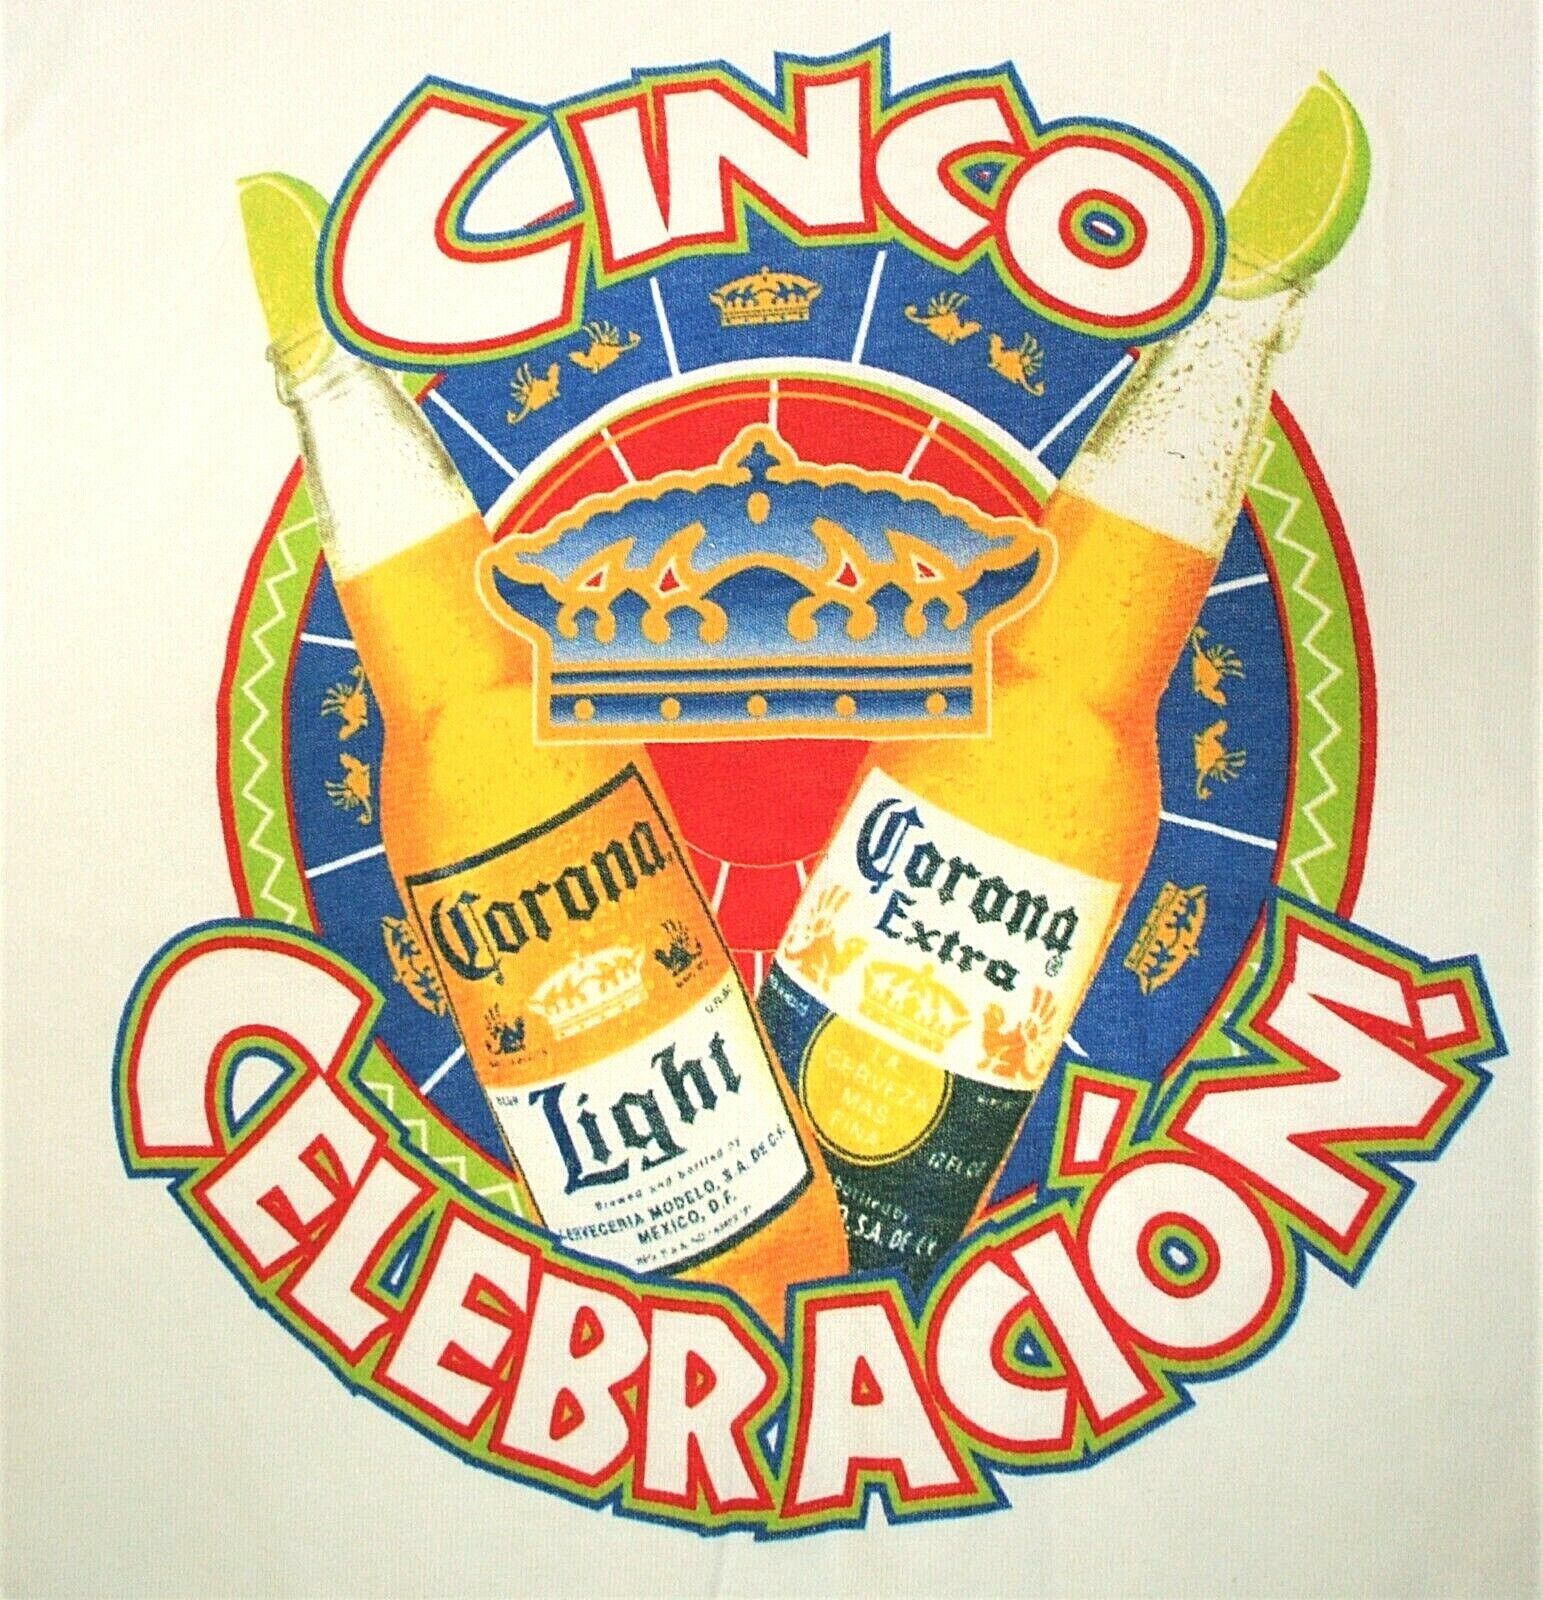 Corona Light Extra Cinco De Mayo Celebracion Beer Graphic T-Shirt New NOS Sz XL